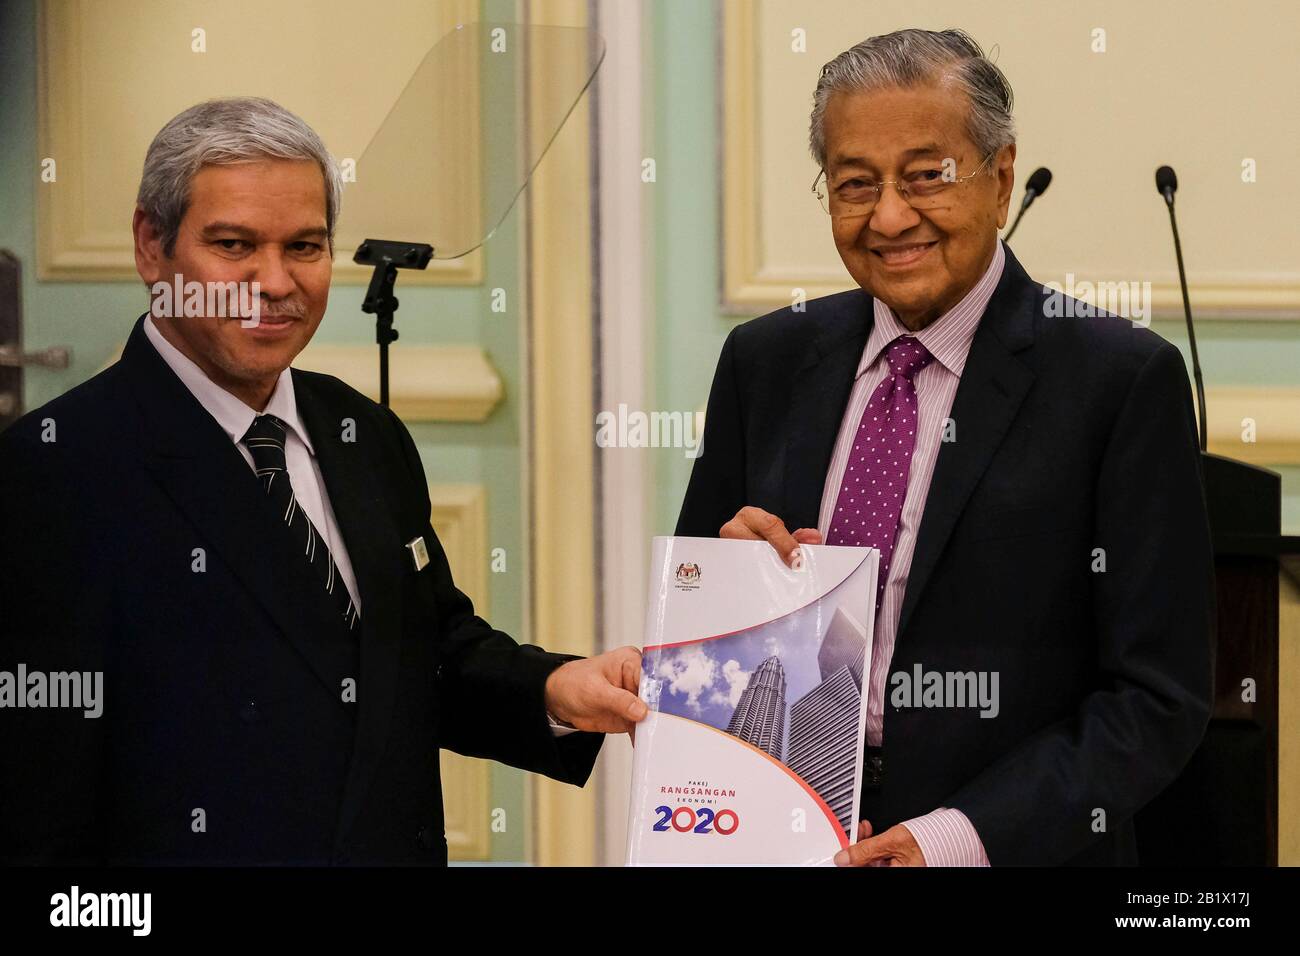 Malaysia Interims-Premierminister, Tun Dr. Mahathir Mohamad während der Zeremonie im Rahmen des Wirtschaftspakets 2020 in Malaysia in Putrajaya.Malaysia hat Einnahmen von mehr als 20 Milliarden als Konjunkturpaket, um Bedenken hinsichtlich der Auswirkungen des Covid-19-Virus-Ausbruchs zu zerstreuen. Das Konjunkturpaket wird sich auf Tourismus, Investitionen und Konsum konzentrieren, um die Inlandreise anzukurbeln. Stockfoto